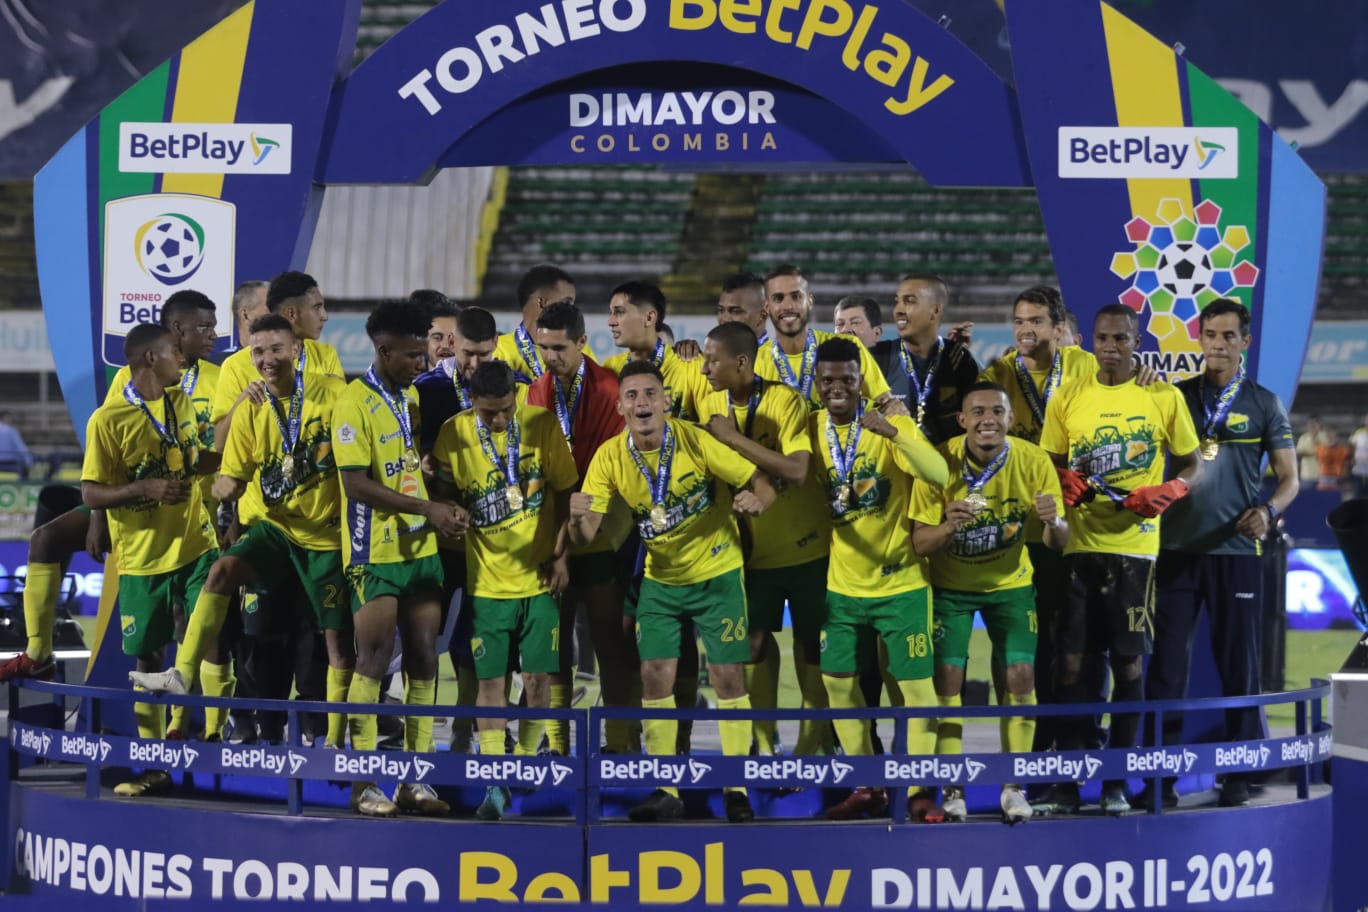 ¡Atlético Huila campeón del Torneo Betplay II y va por el título del año!  ￼